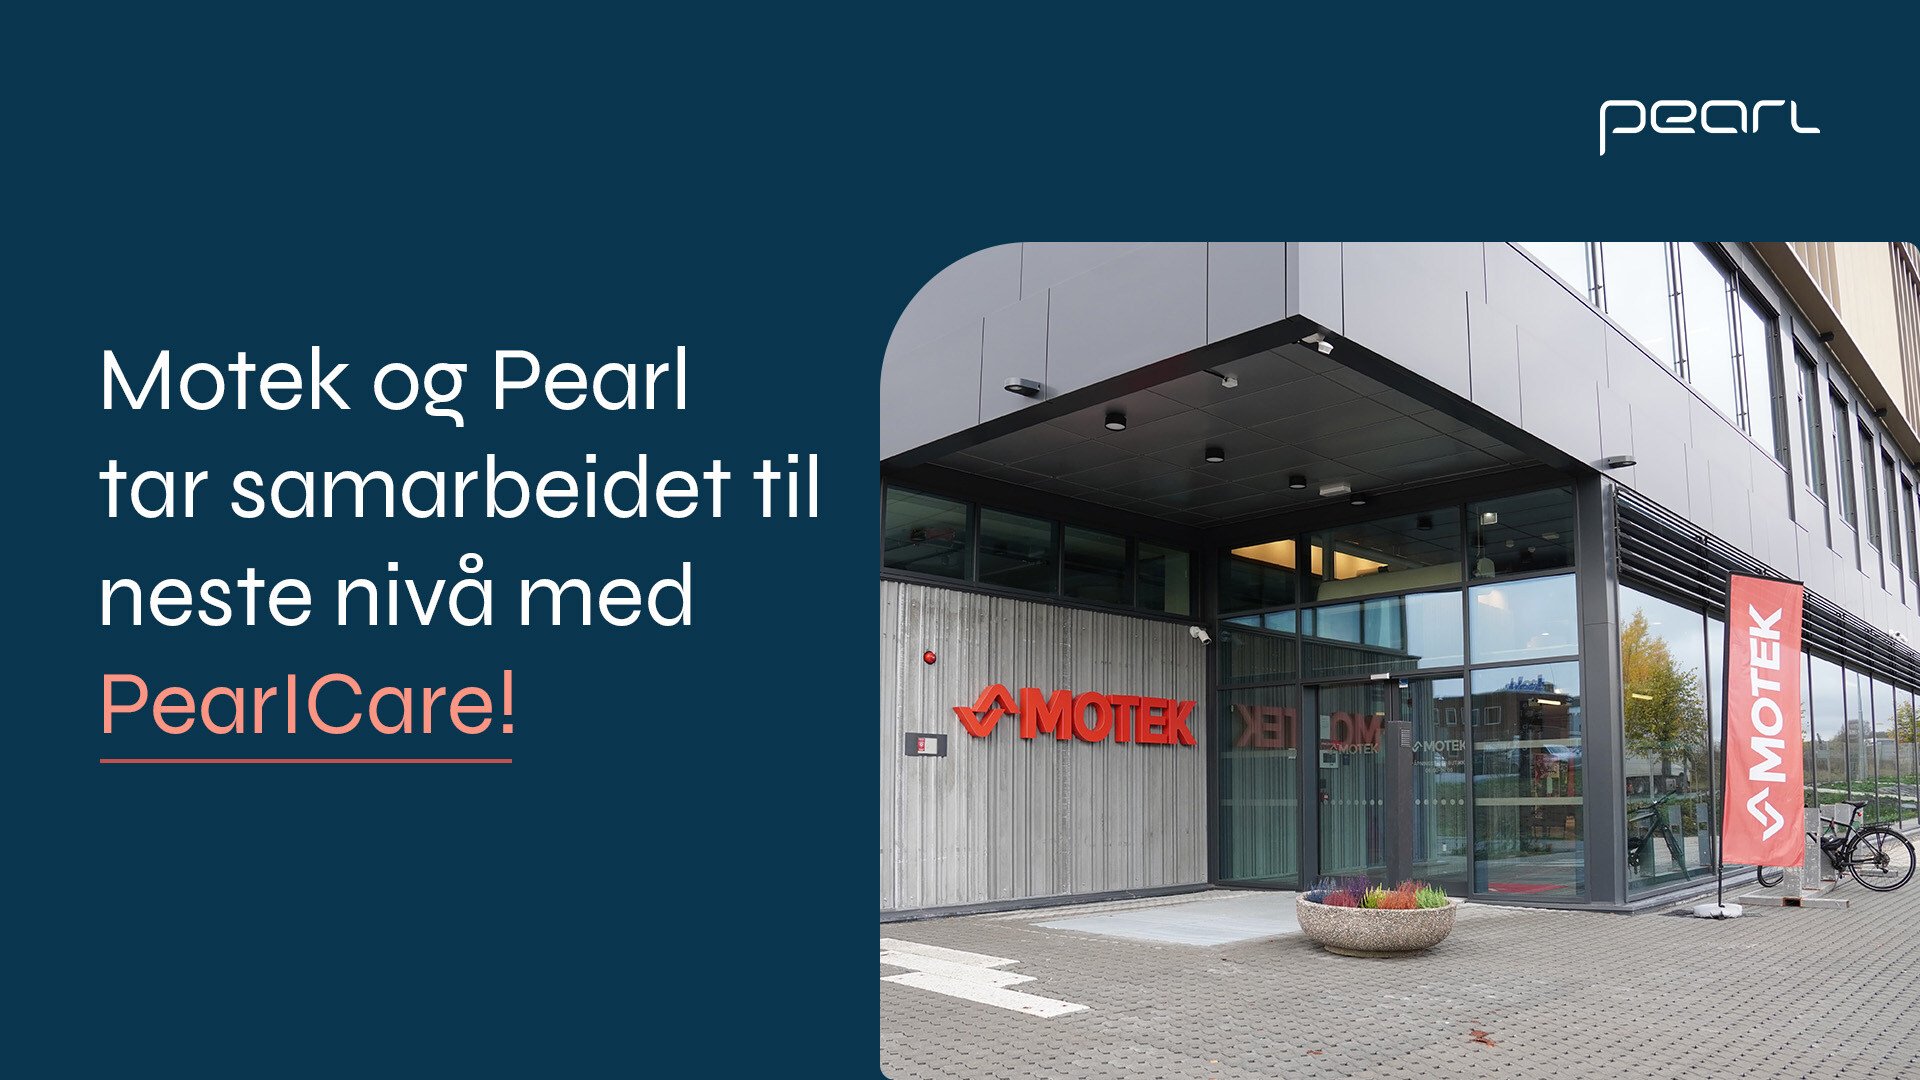 Motek og Pearl hatt et tett samarbeid om alt fra ERP til netthandel helt siden 2013. Nå videreutvikler Pearl samarbeidet gjennom det nye konseptet PearlCare. 